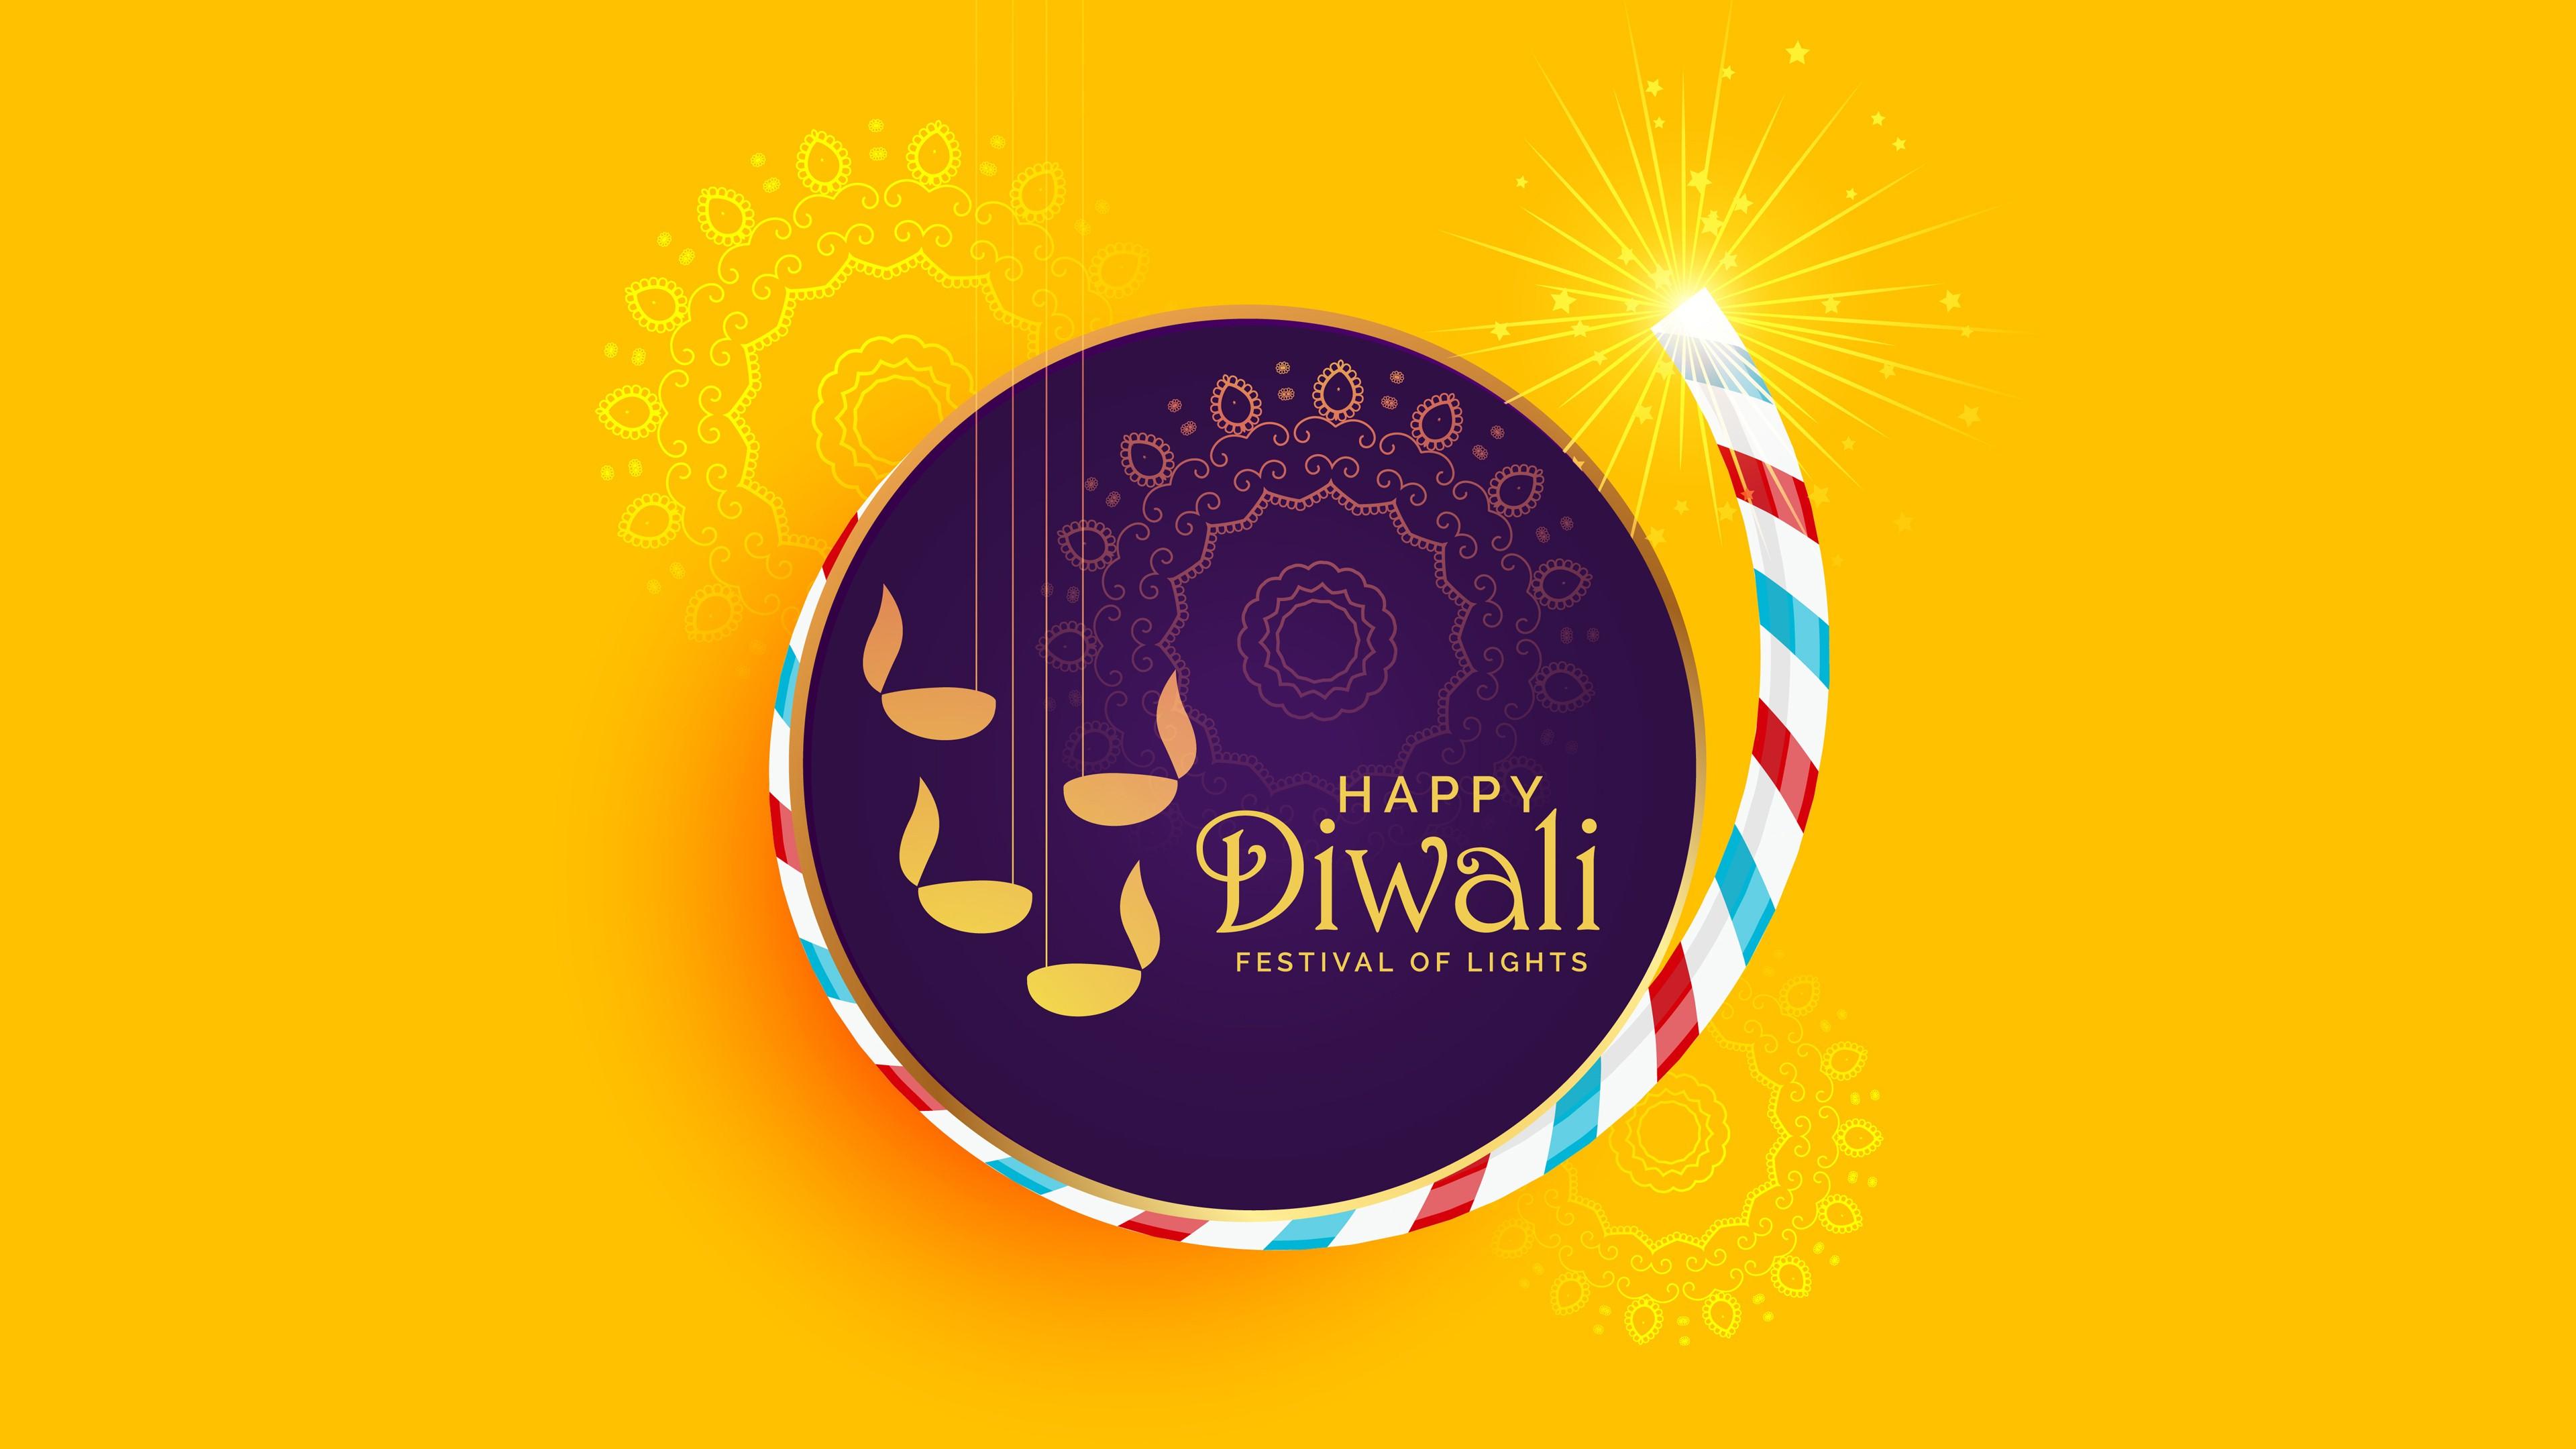 4K Wallpaper of Happy Diwali Festival